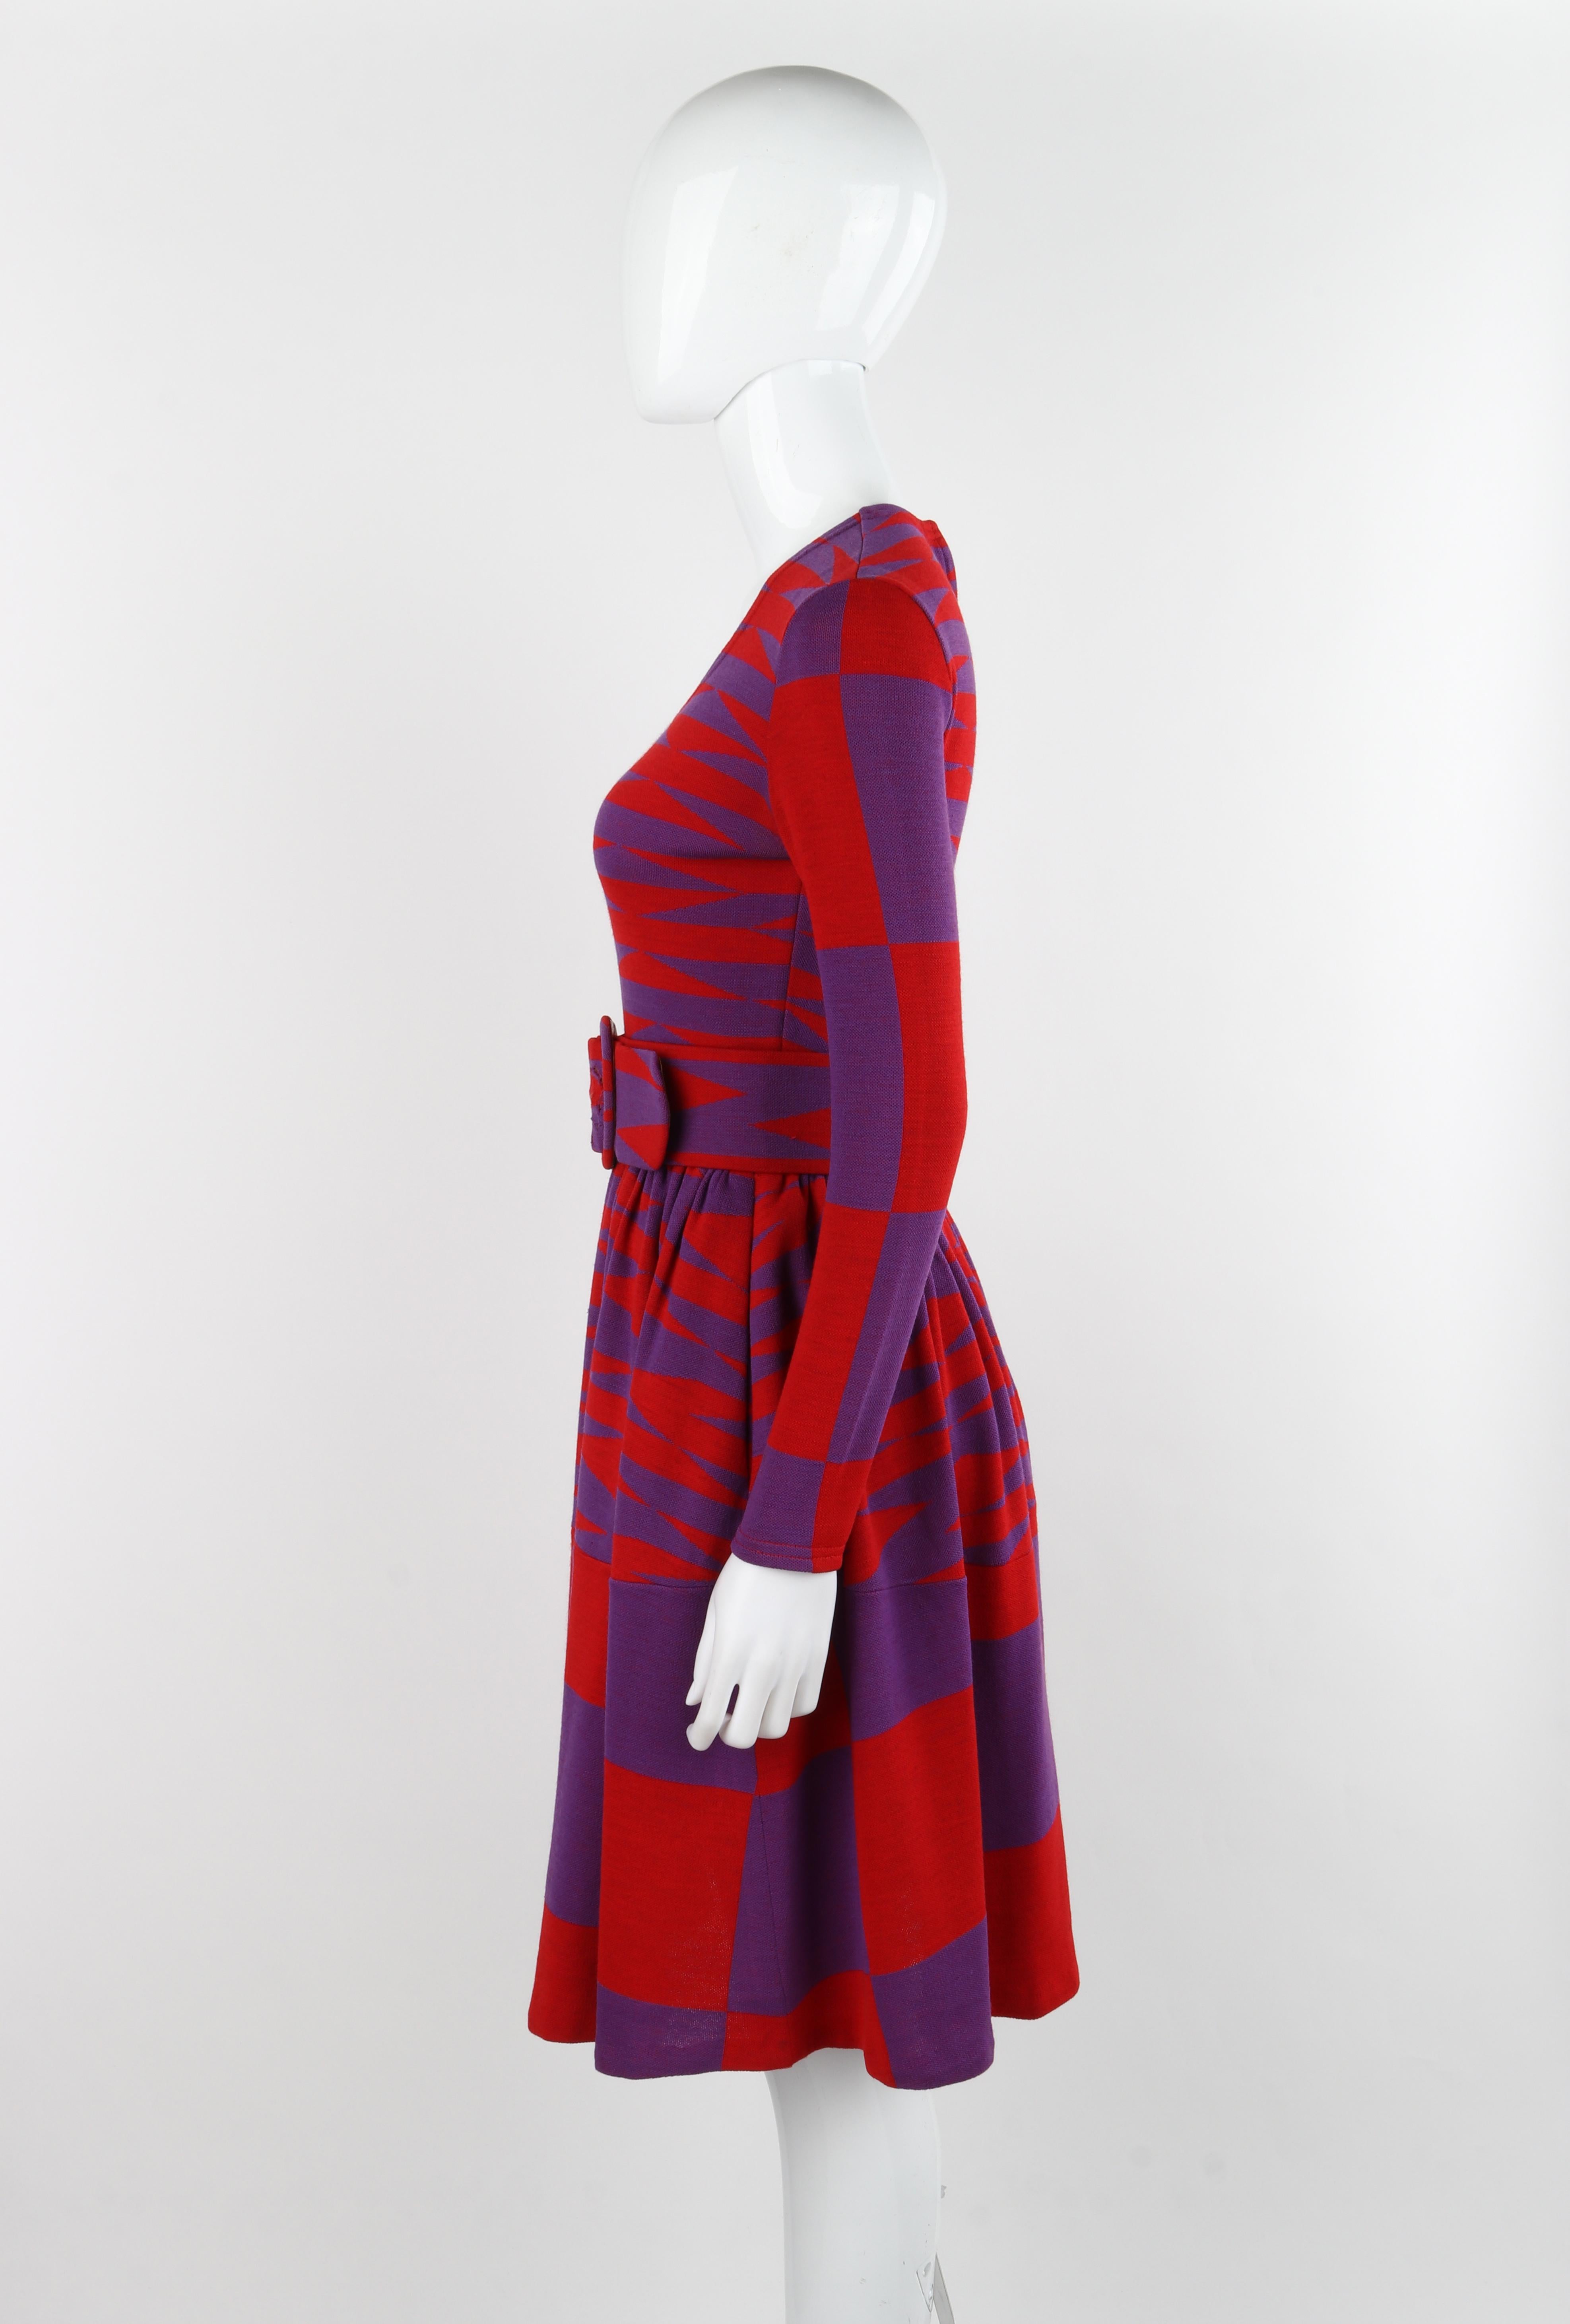 RUDI GERNREICH Harmon Knitwear c.1971 Purple Red Mod Op Art Wool Knit Day Dress For Sale 2